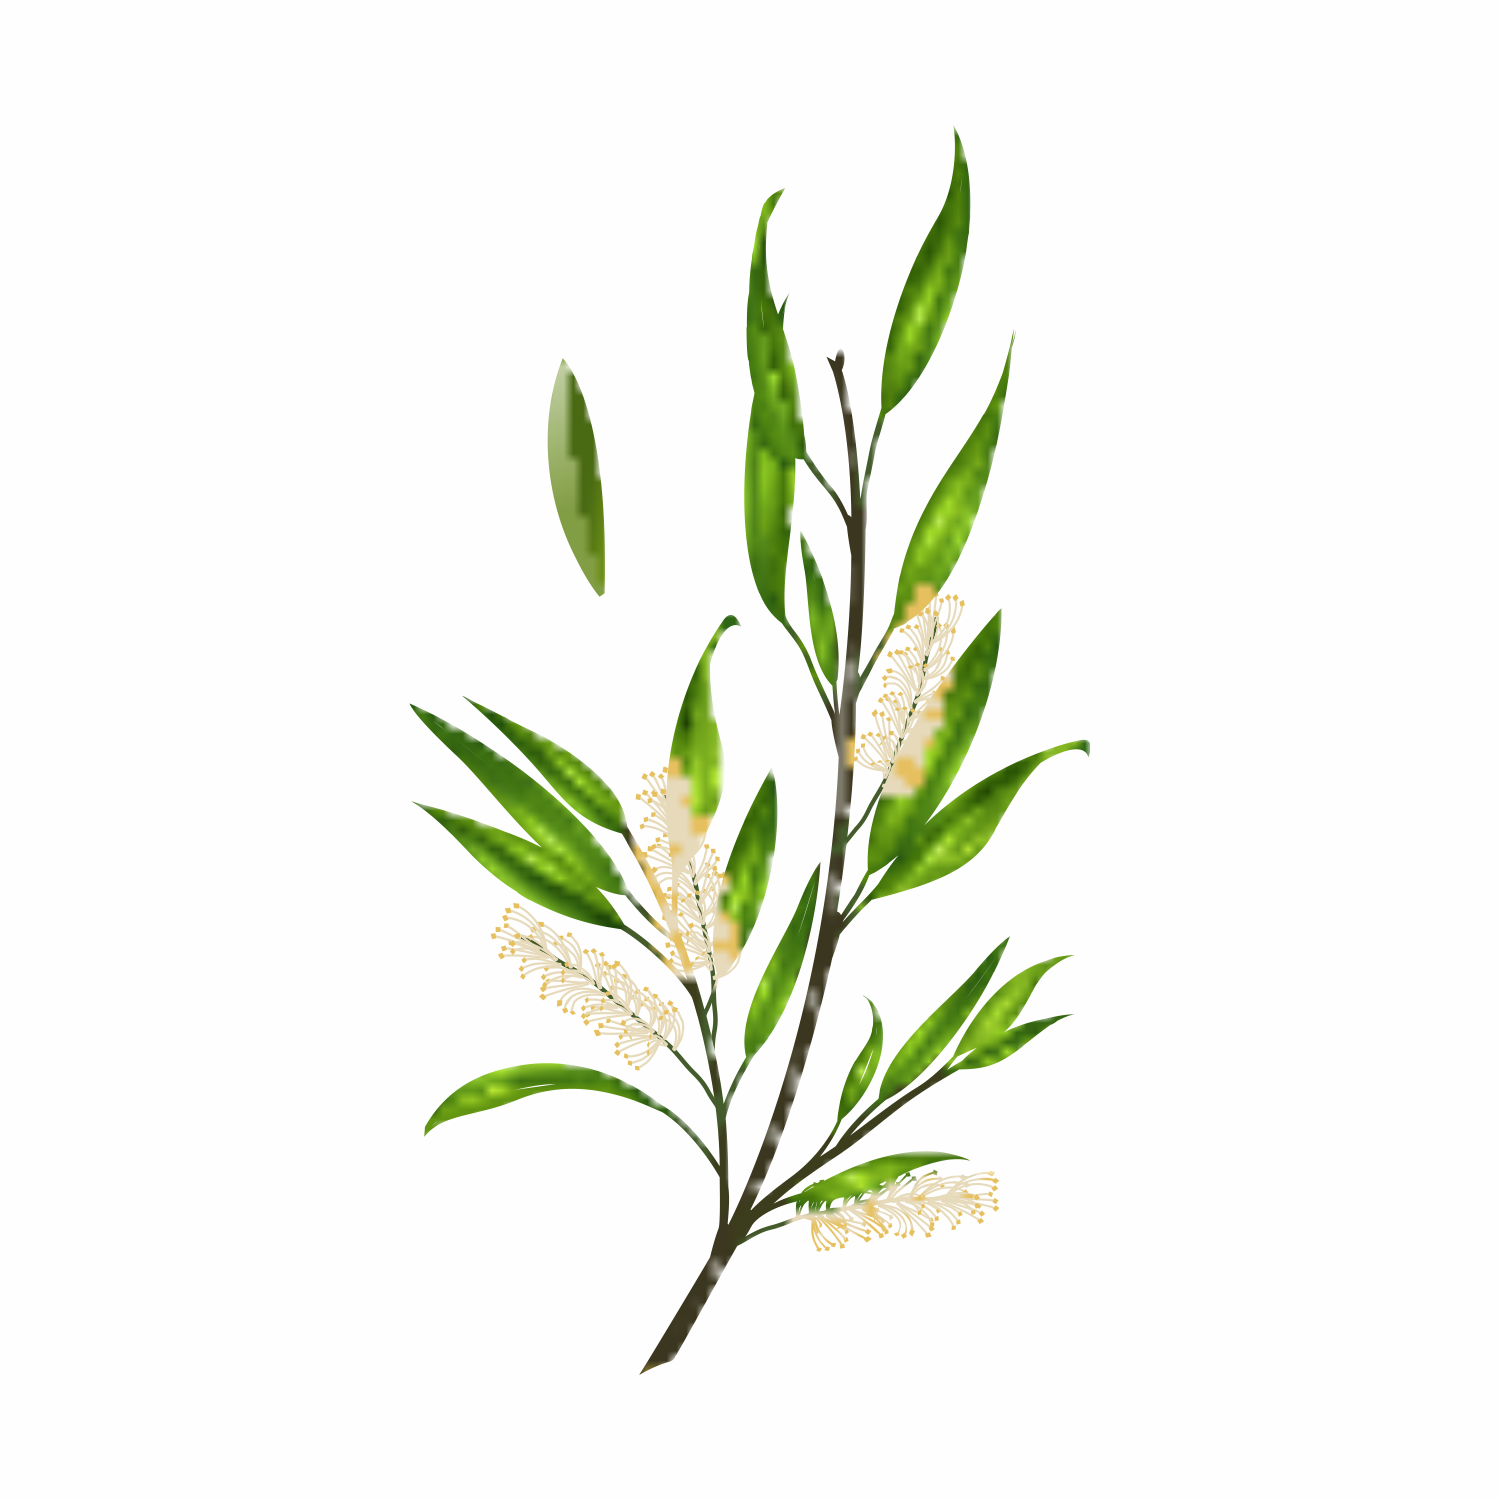 Melaleuca Alternifolia (Tea Tree) Leaf Oil: The Power of Tea Tree Oil